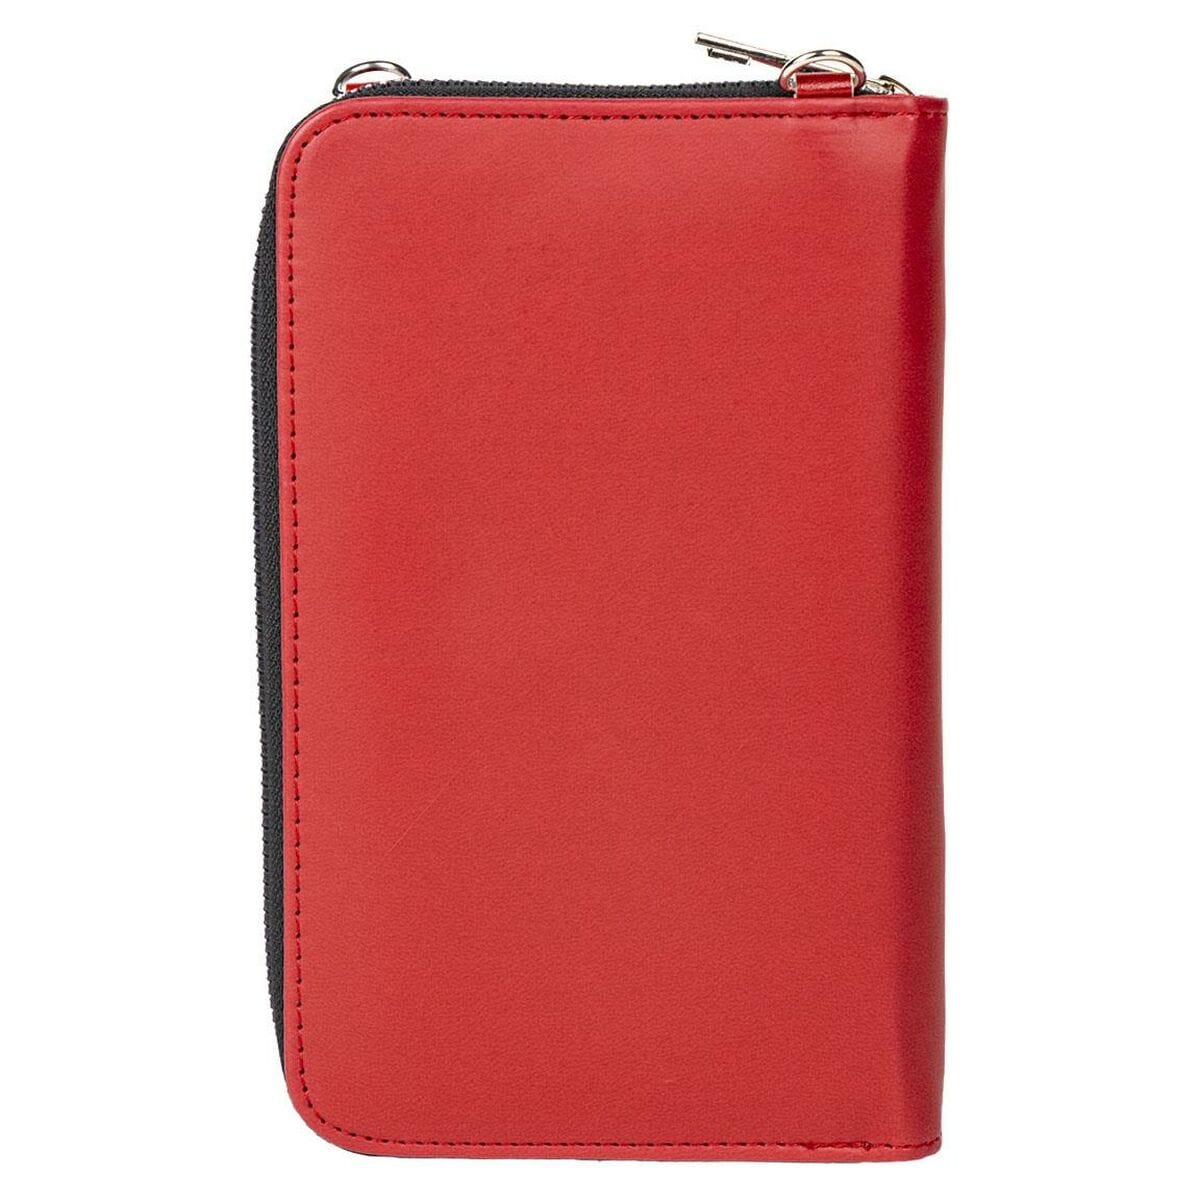 Harry Potter Mode | Accessoires > Accessoires > Taschen und Geldbeutel Handtasche Harry Potter Gryffindor 10,5 x 17,5 x 2,5 cm Rot